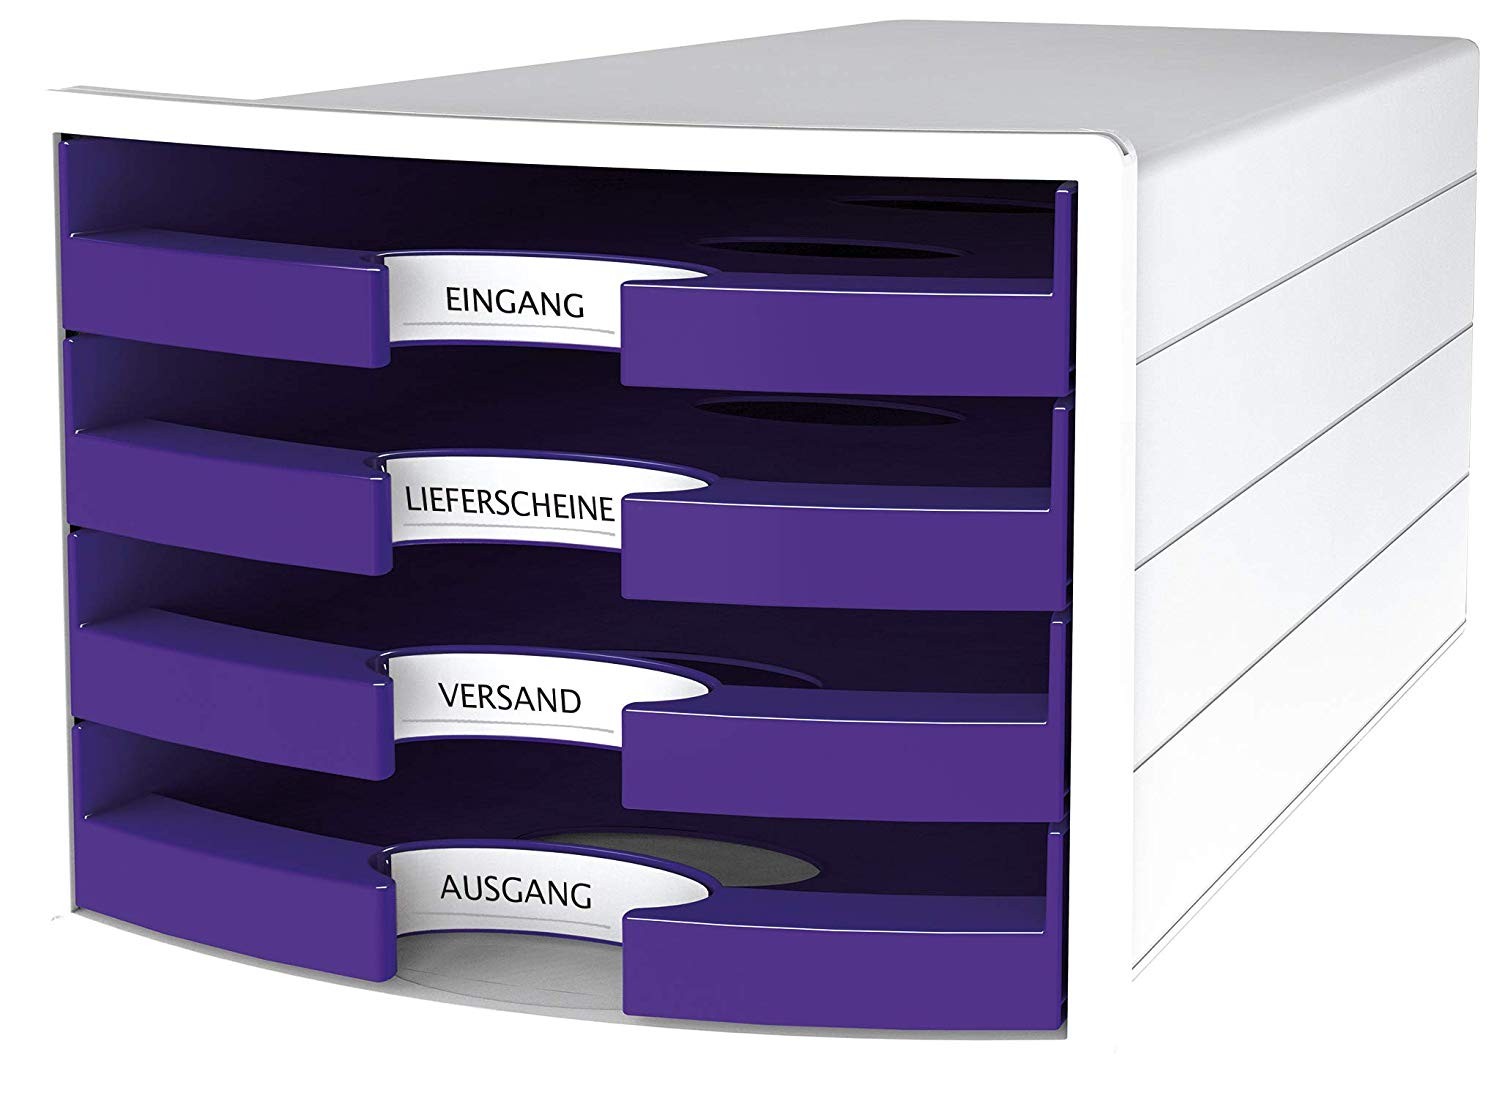 Suport plastic cu 4 sertare pt. documente, HAN Impuls 2.0 (open) - alb - sertare violet